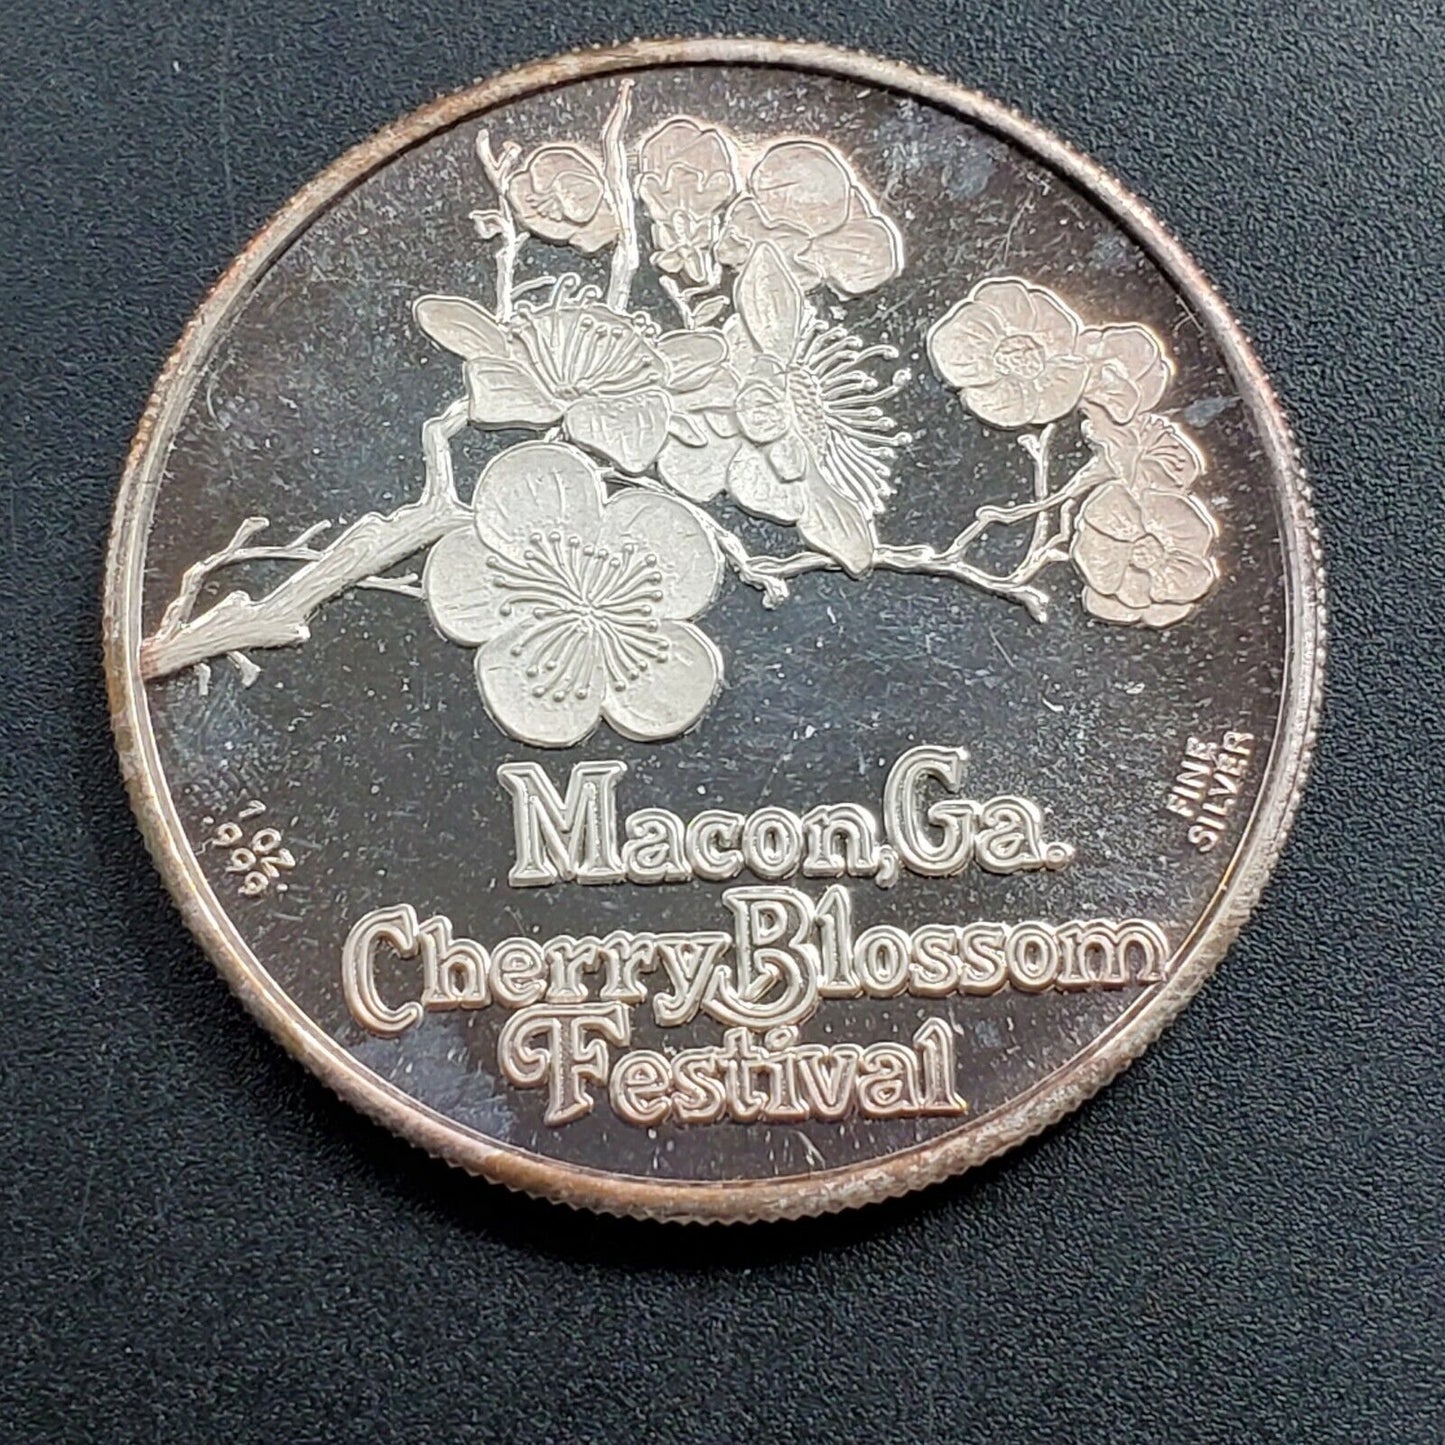 Rare Vintage MACON GEORGIA Cherry Blossom Festival 1 Troy Oz .999 Silver ROUND 2